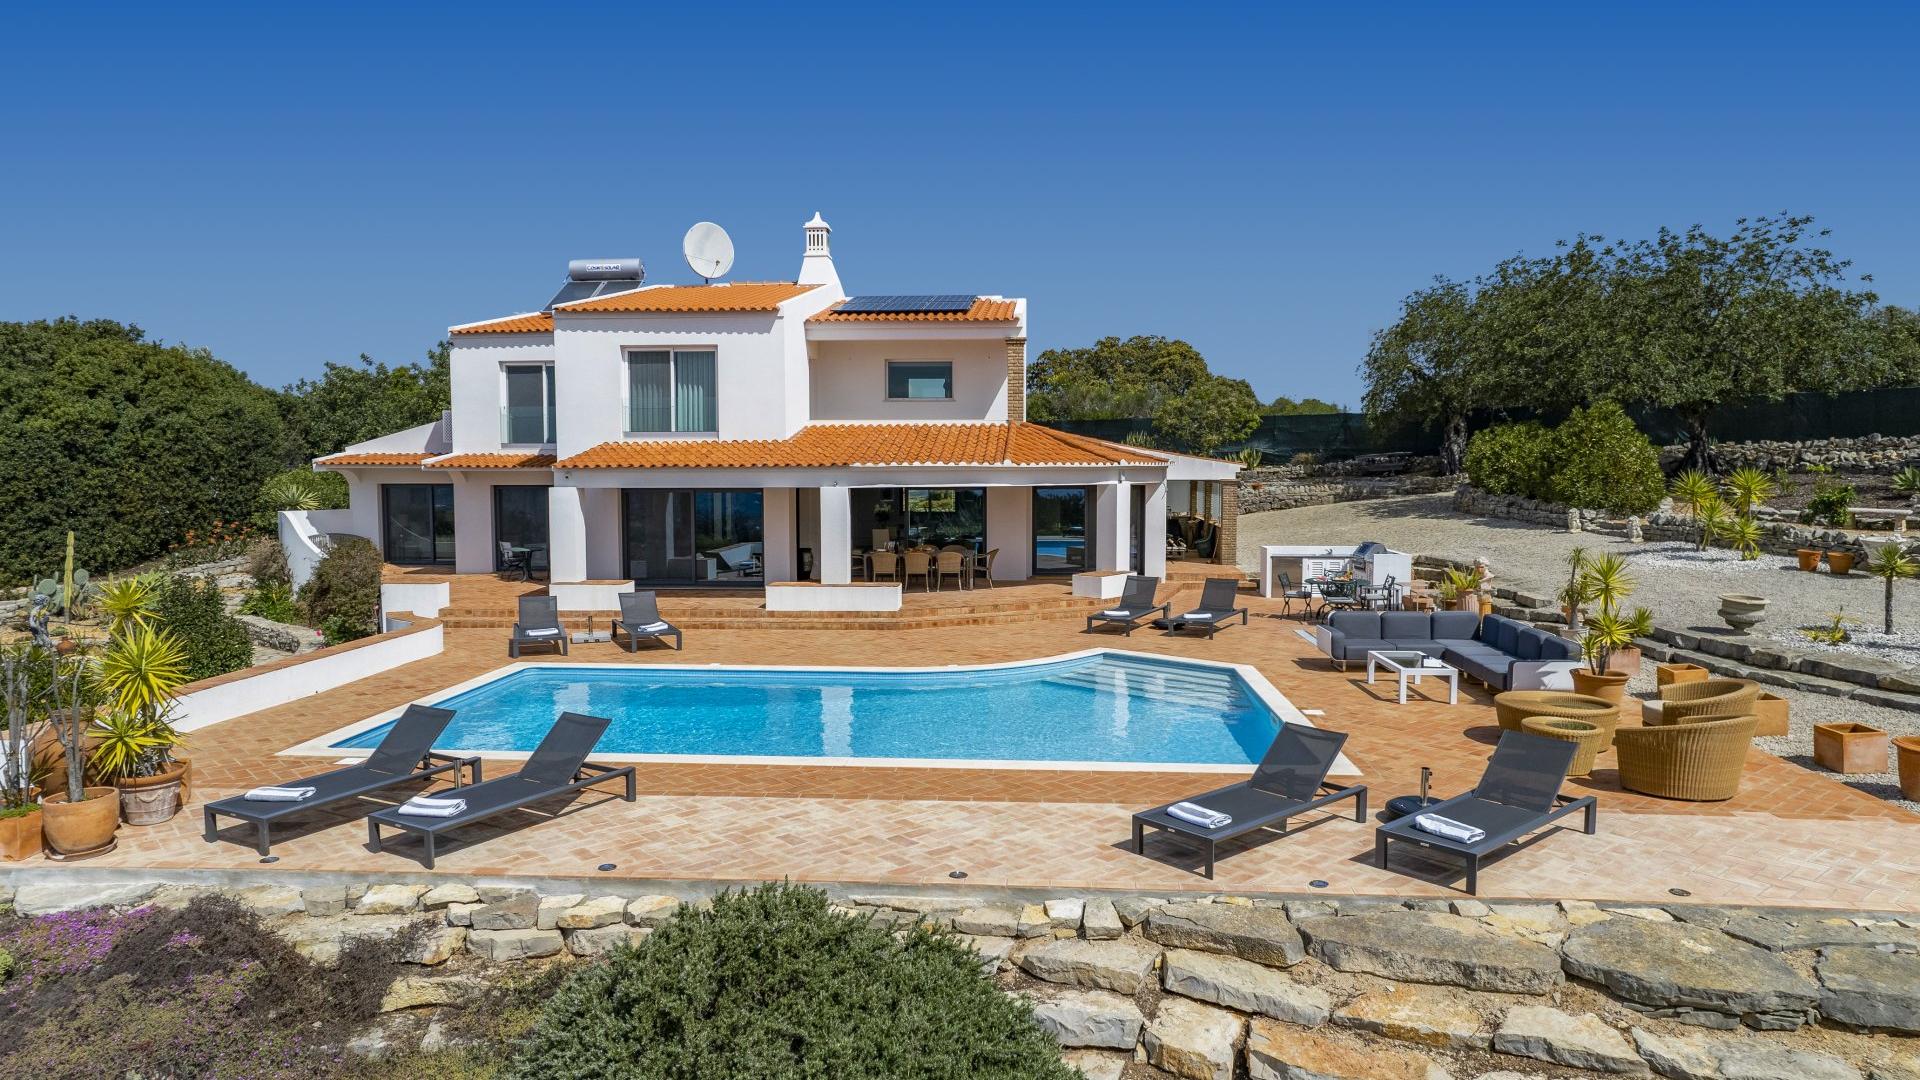 Casa Branca - Santa Barbara de Nexe, Algarve - DJI_0985_RT.jpg